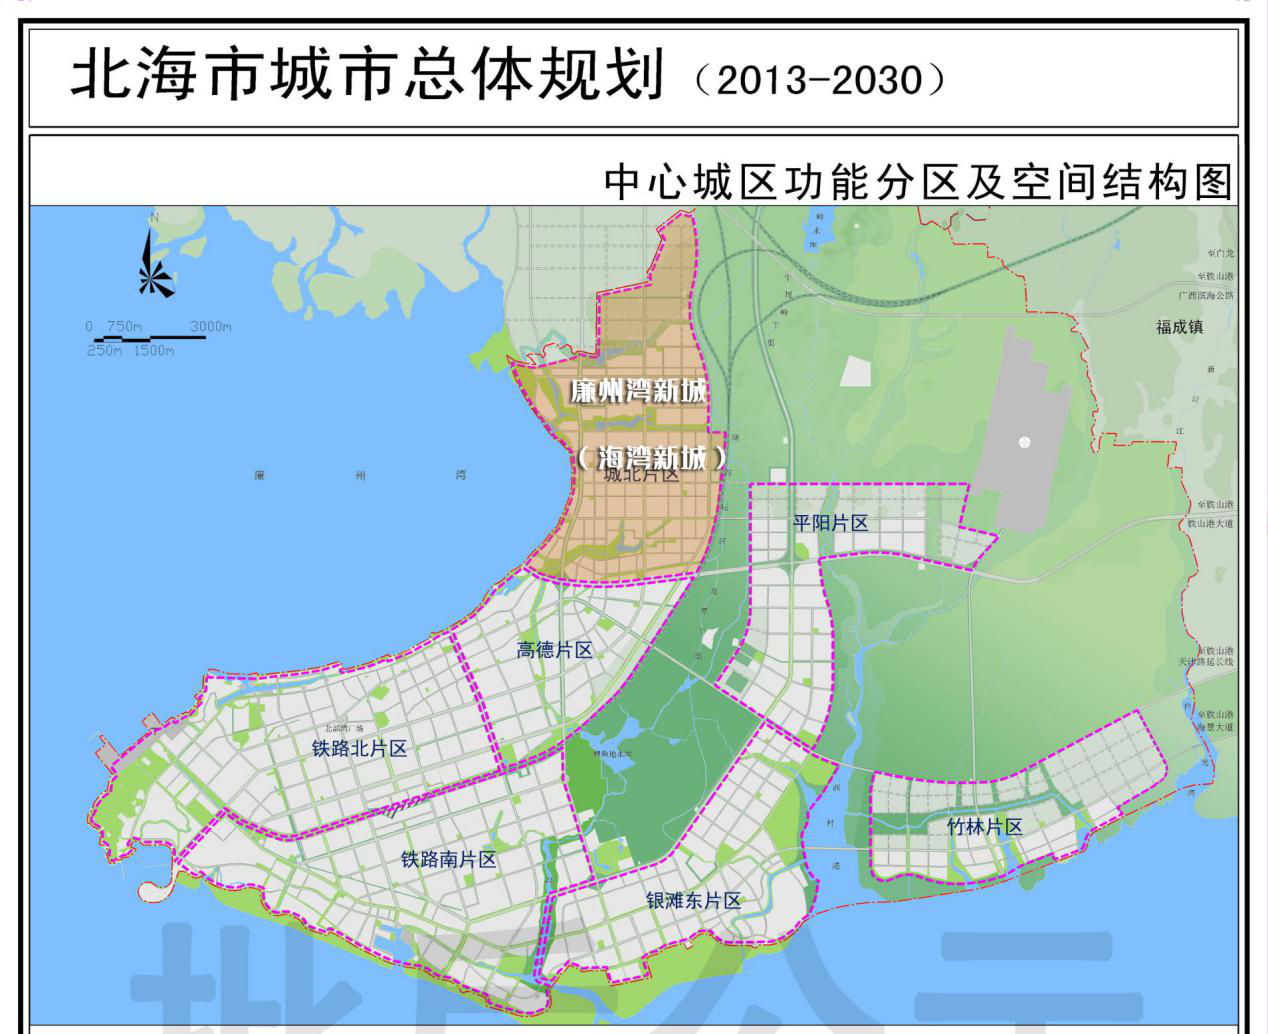 翡丽湾项目位于银滩东片区,《北海城市总体规划(2013-2030)》把中心